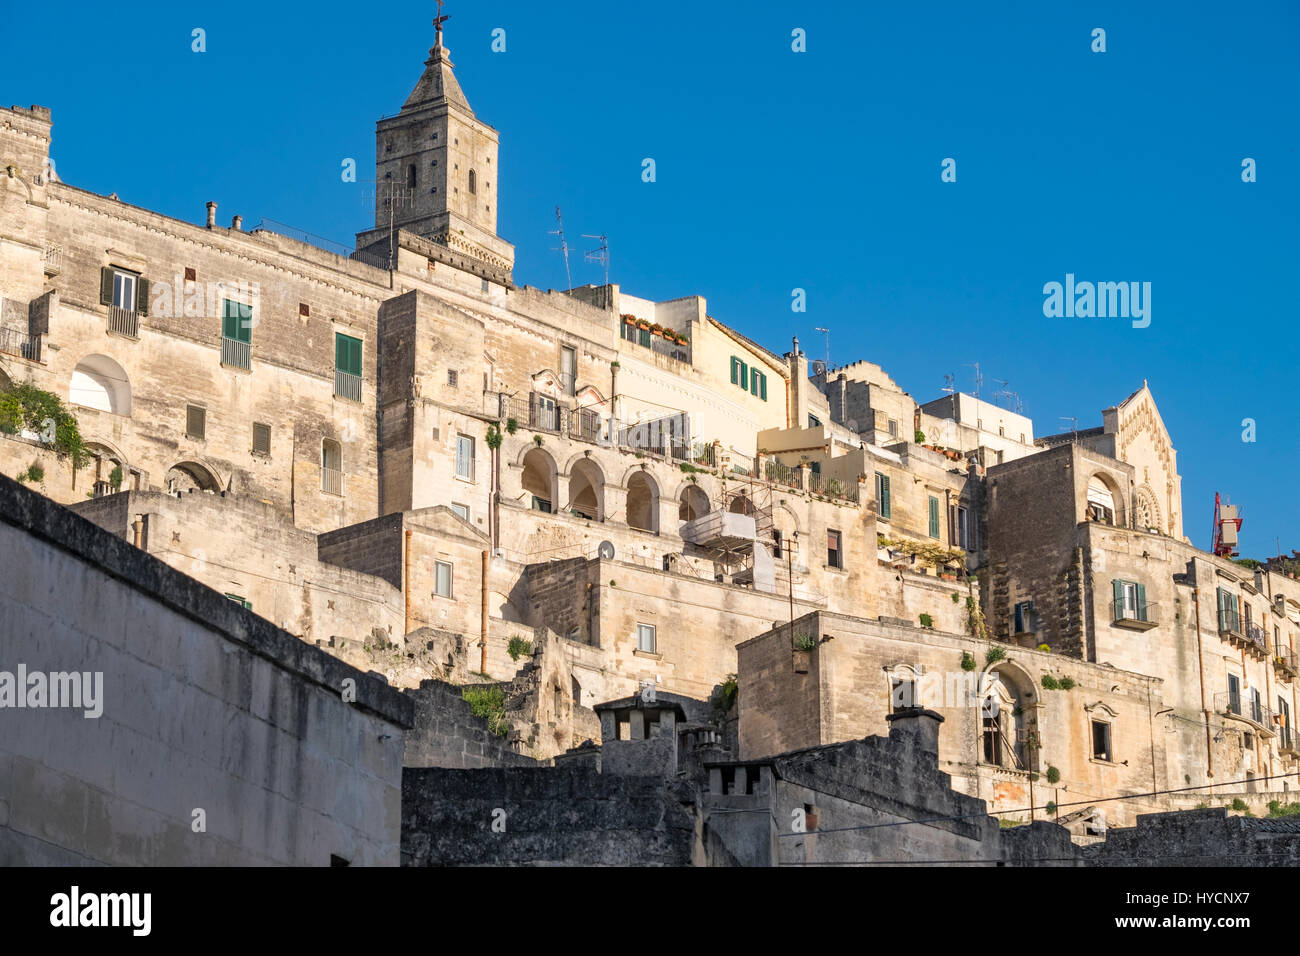 Stadtbild von Matera, Italien, bei Sonnenuntergang. Weltkulturerbe und Kulturhauptstadt Europas für 2019 Stockfoto